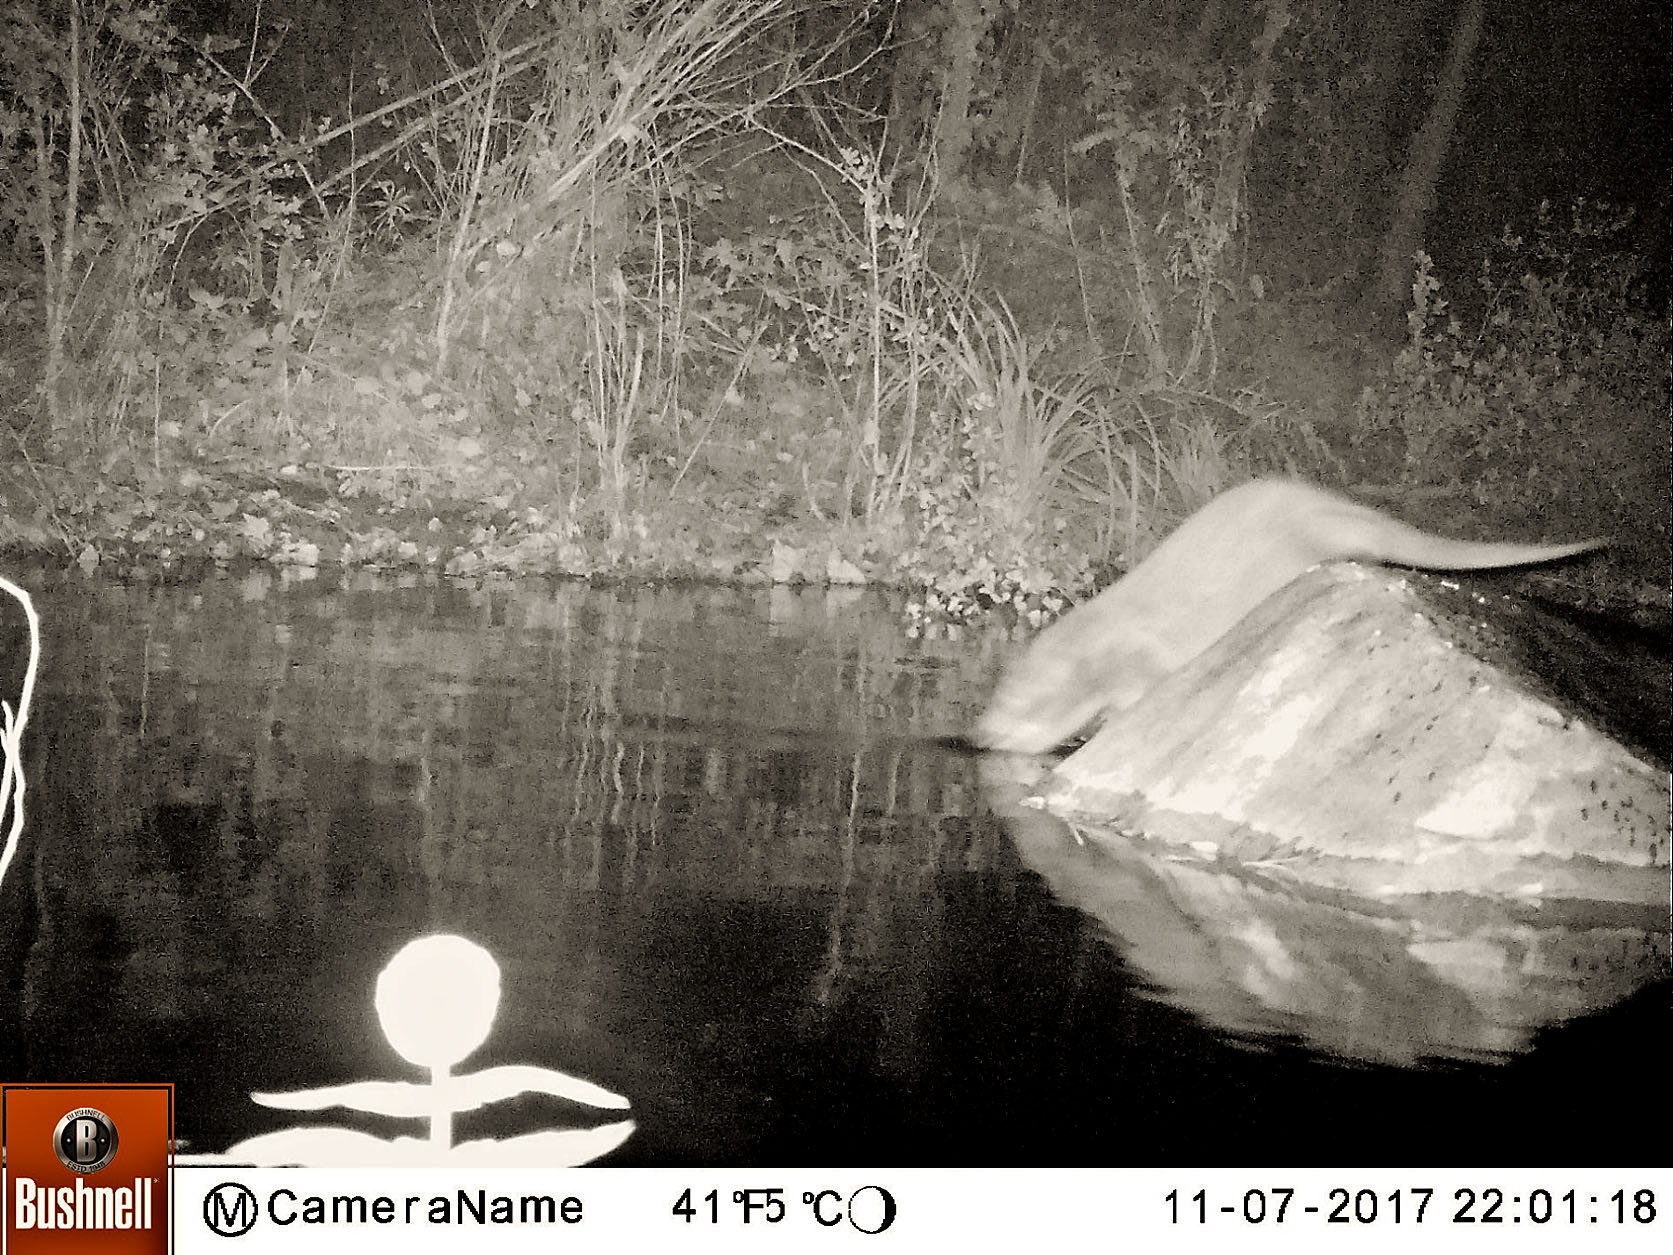 Un exemplar de llúdriga captat al riu Tenes